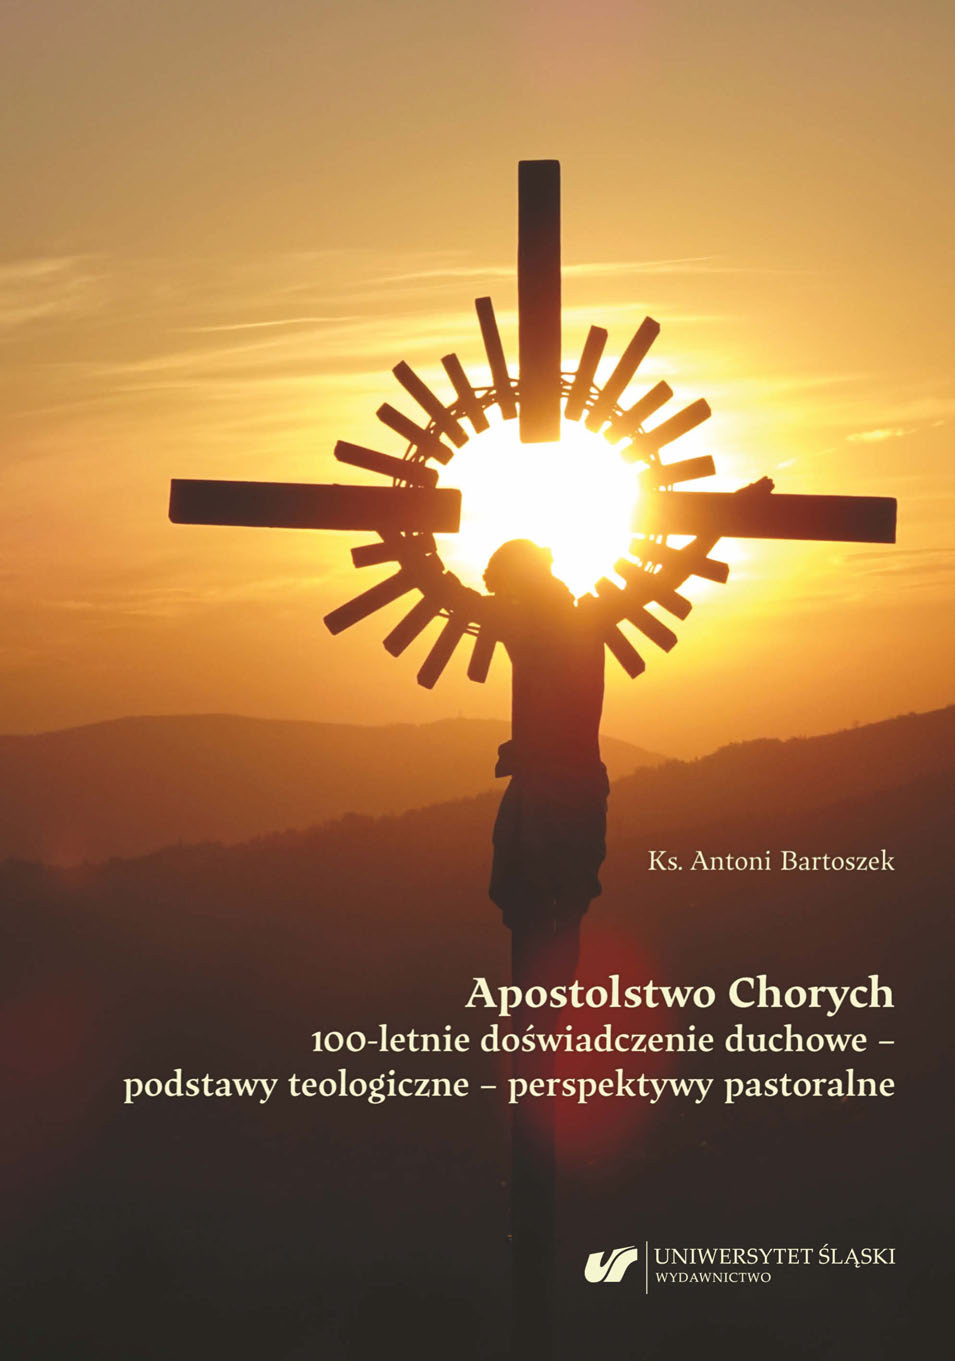 Apostolstwo Chorych. 100-letnie doświadczenie duchowe – podstawy teologiczne – perspektywy pastoralne